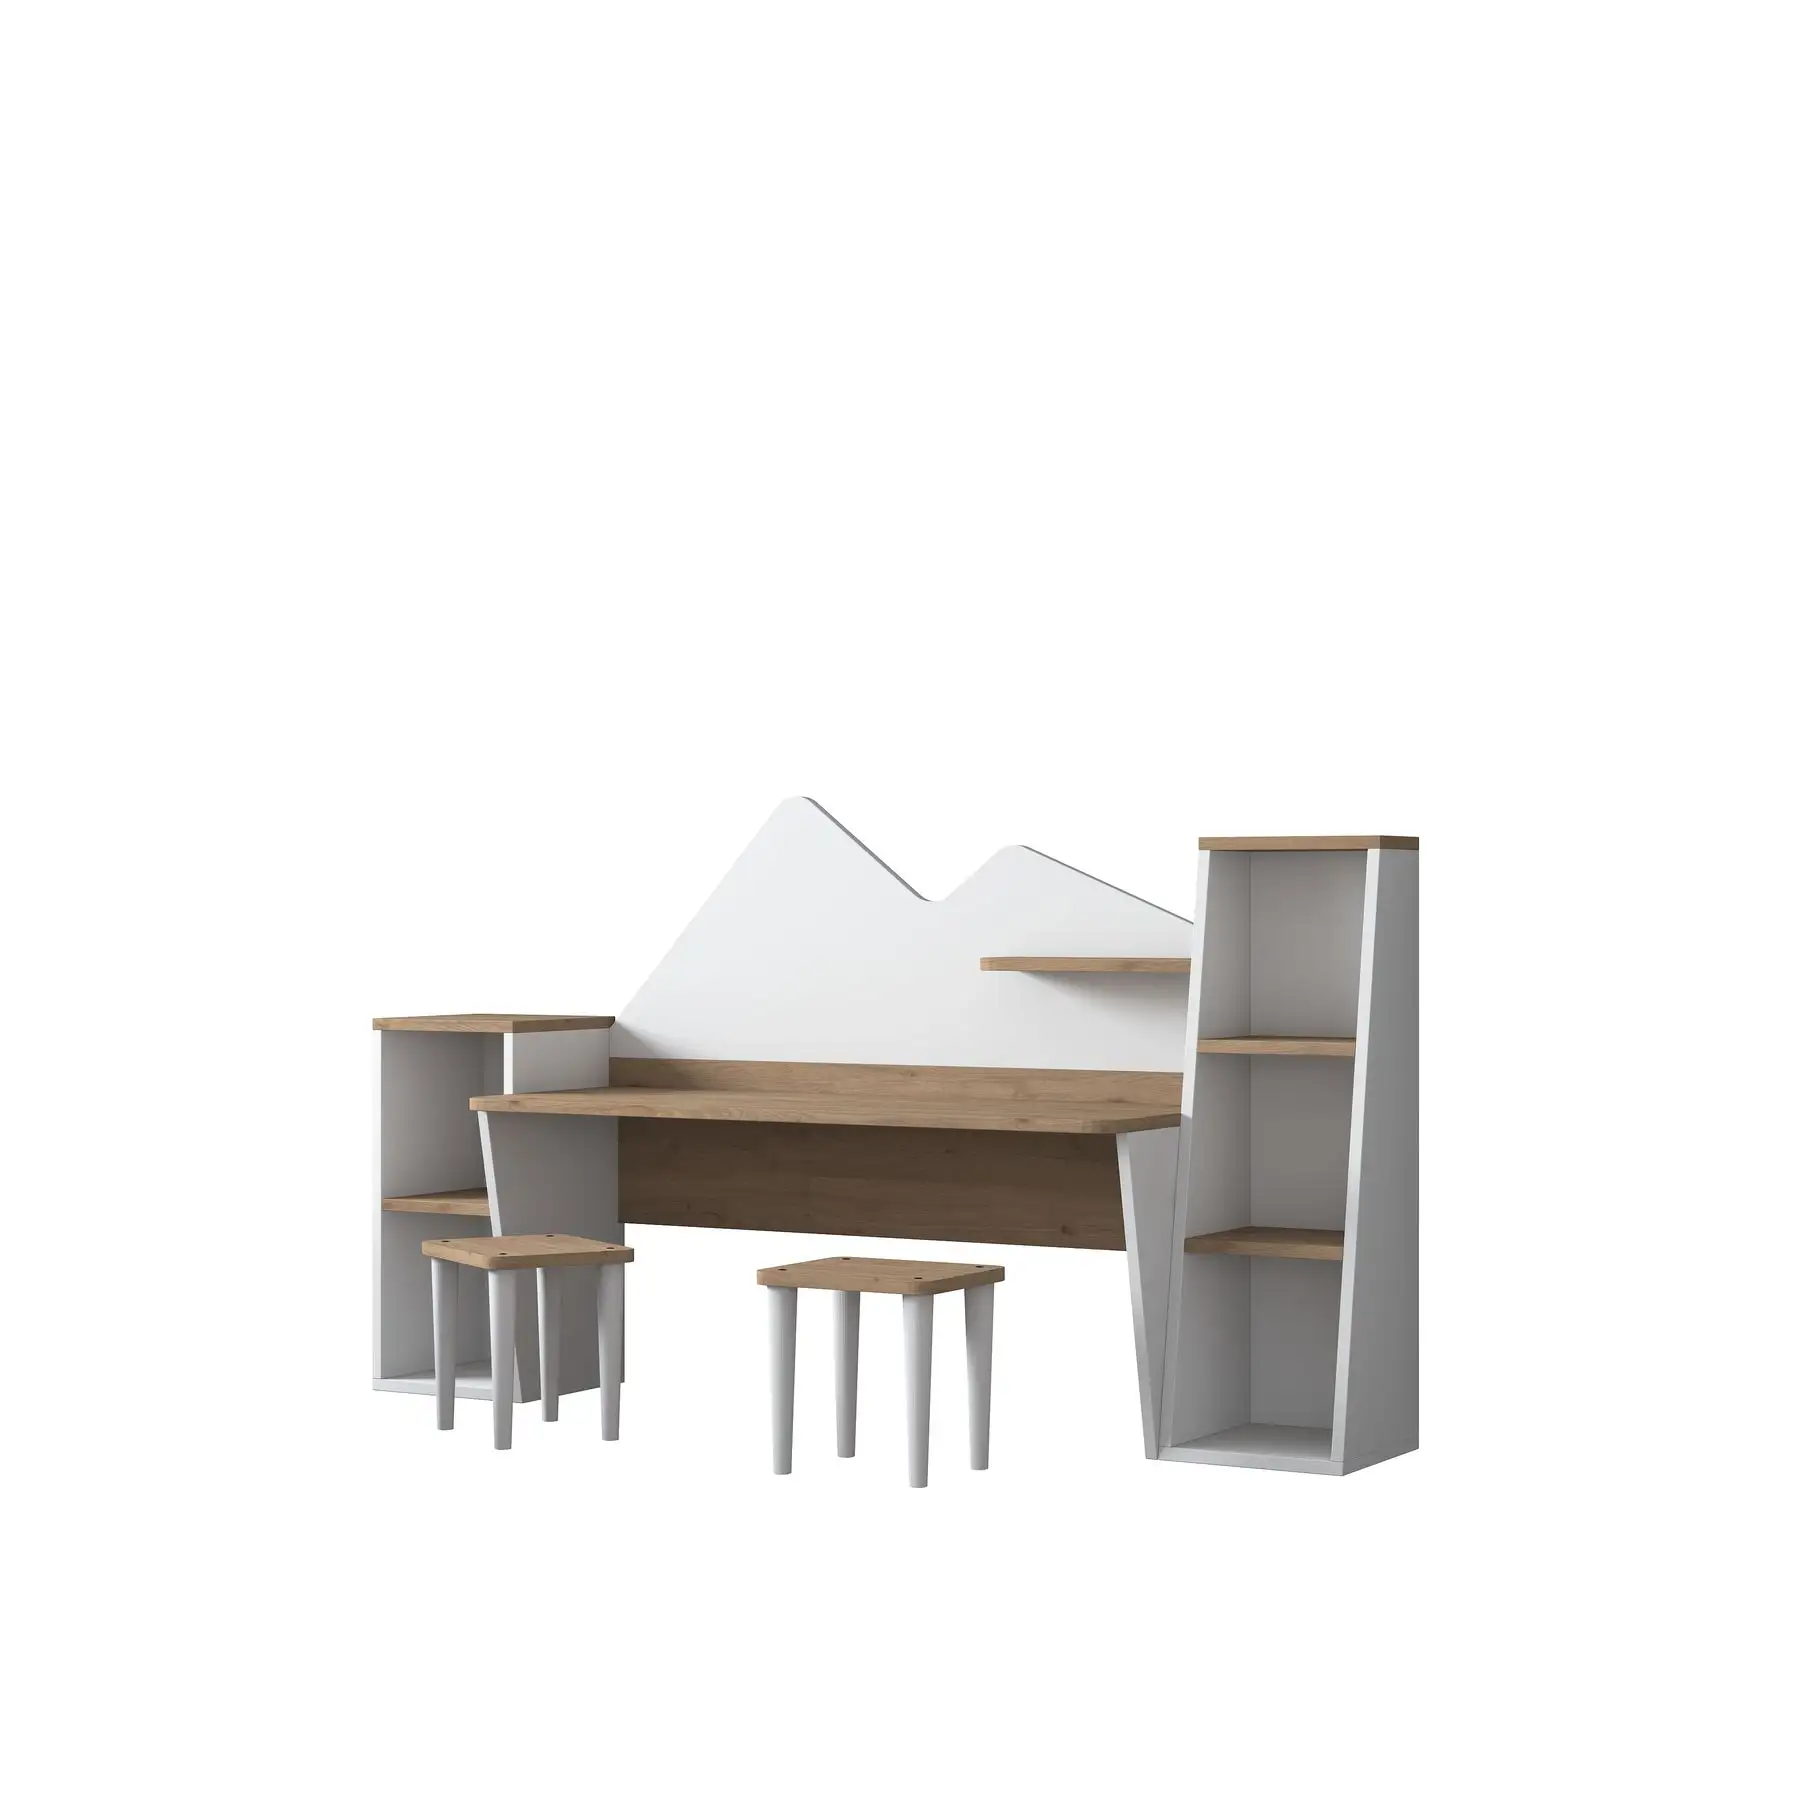 Rani DL101 Conjunto de mesa e dois bancos para crianças, mesa para estudar e brincar, cor branca S-Walnut, móveis para atacado 2003